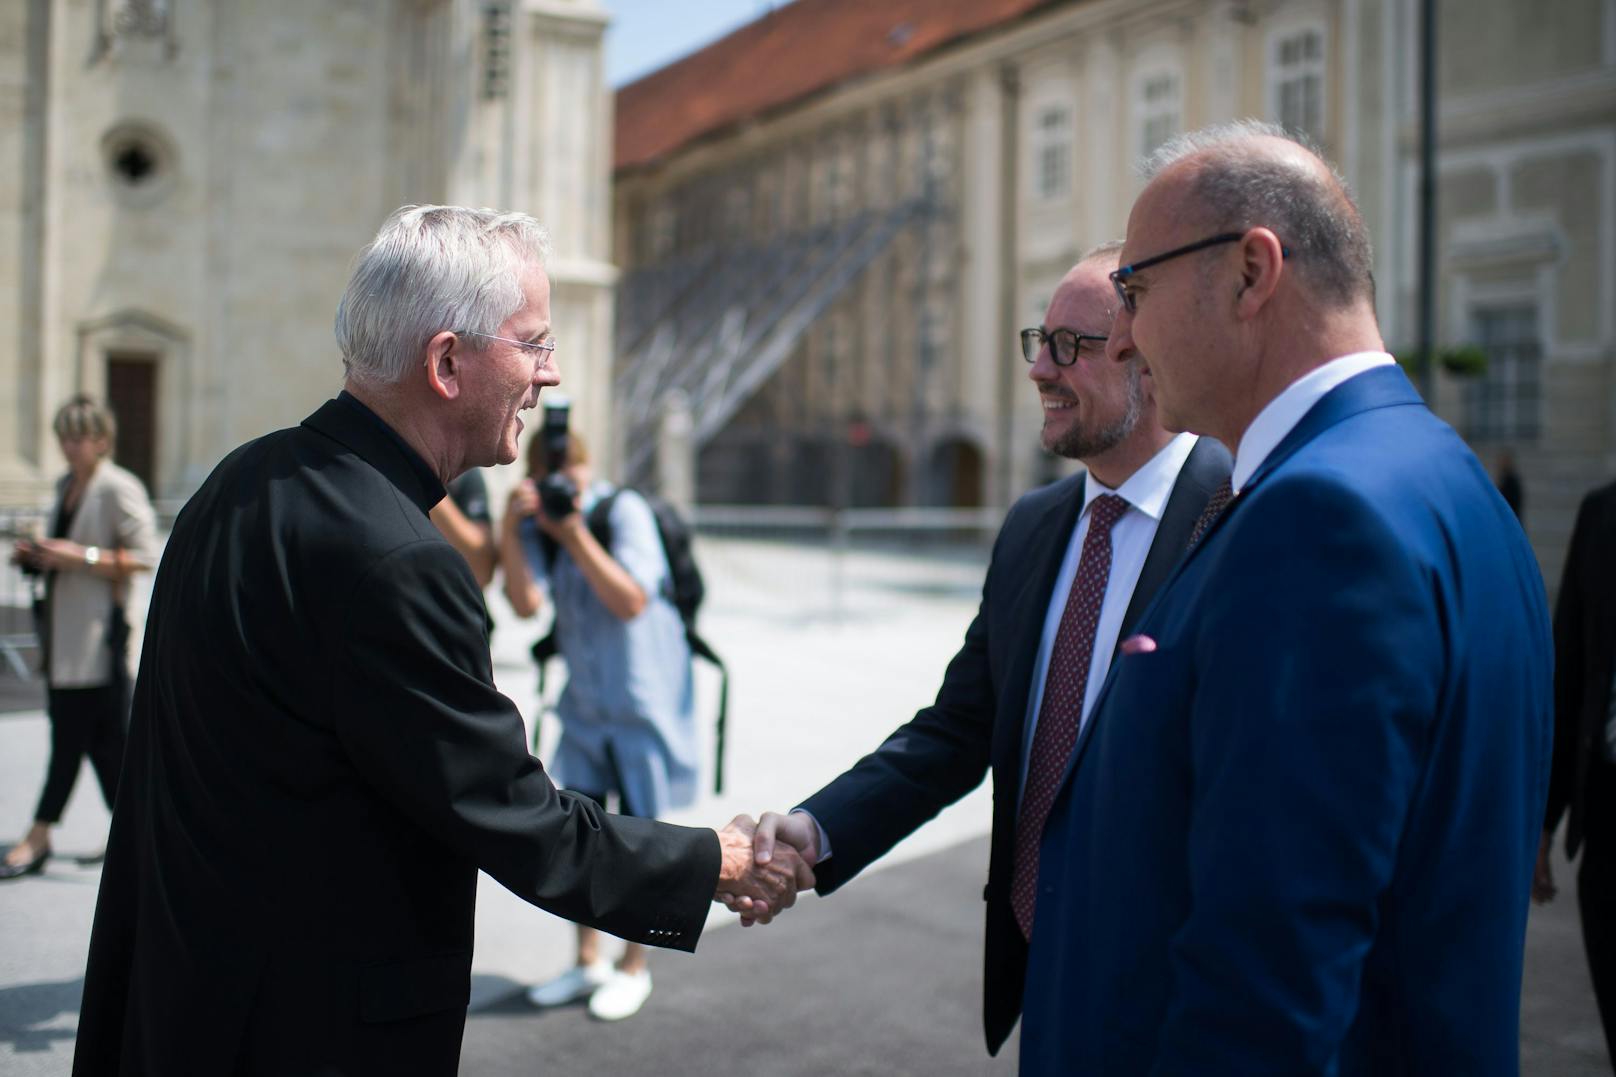 Am 23.07.2021 besuchte Außenminister Alexander Schallenberg gemeinsam mit seinem kroatischen Amtskollegen Gordan Grlic Radman, geführt durch Rektor der Kathdrale Josip Kuhatic, die Kathedrale in Zagreb.